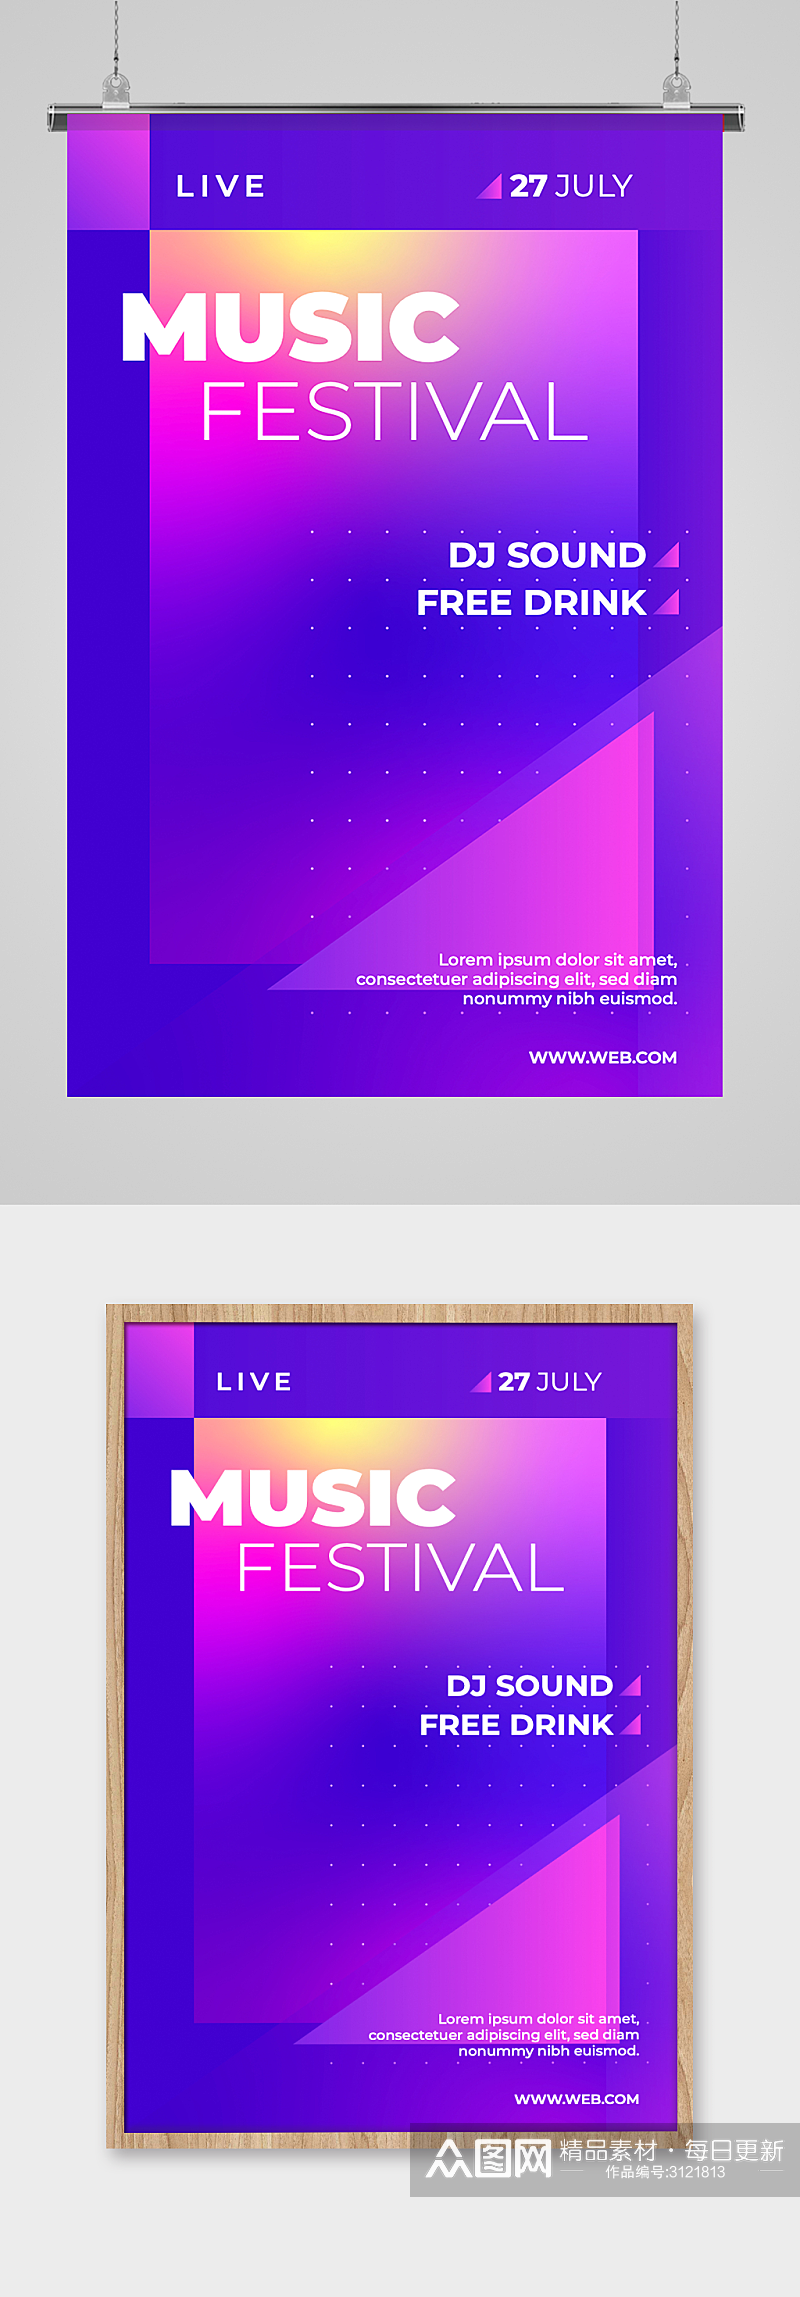 紫色潮流炫酷酒吧音乐节海报背景素材